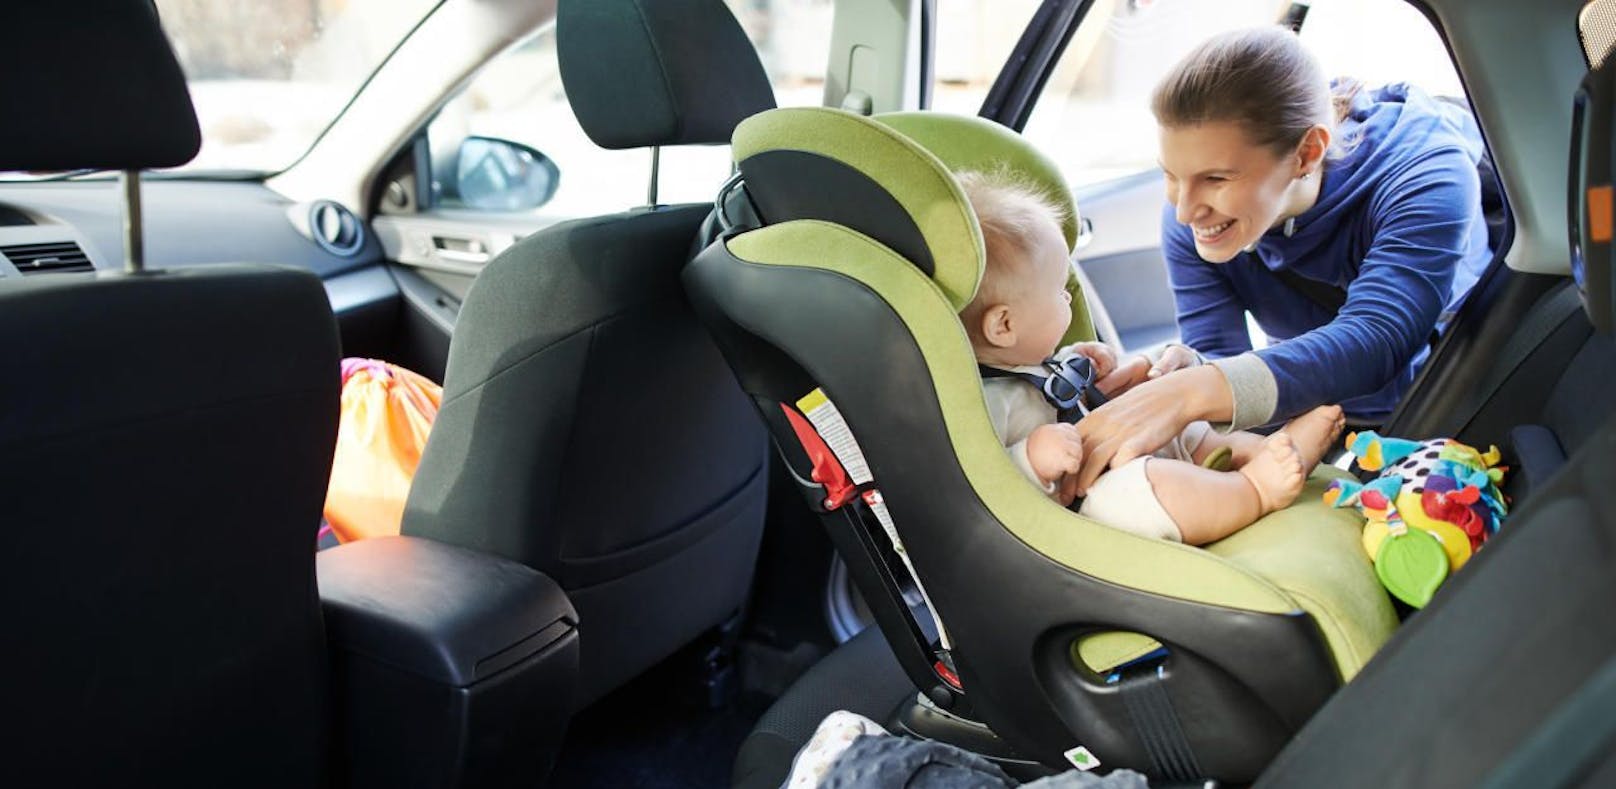 Warnsysteme sollen verhindern, dass Kinder im heißen Auto vergessen werden.